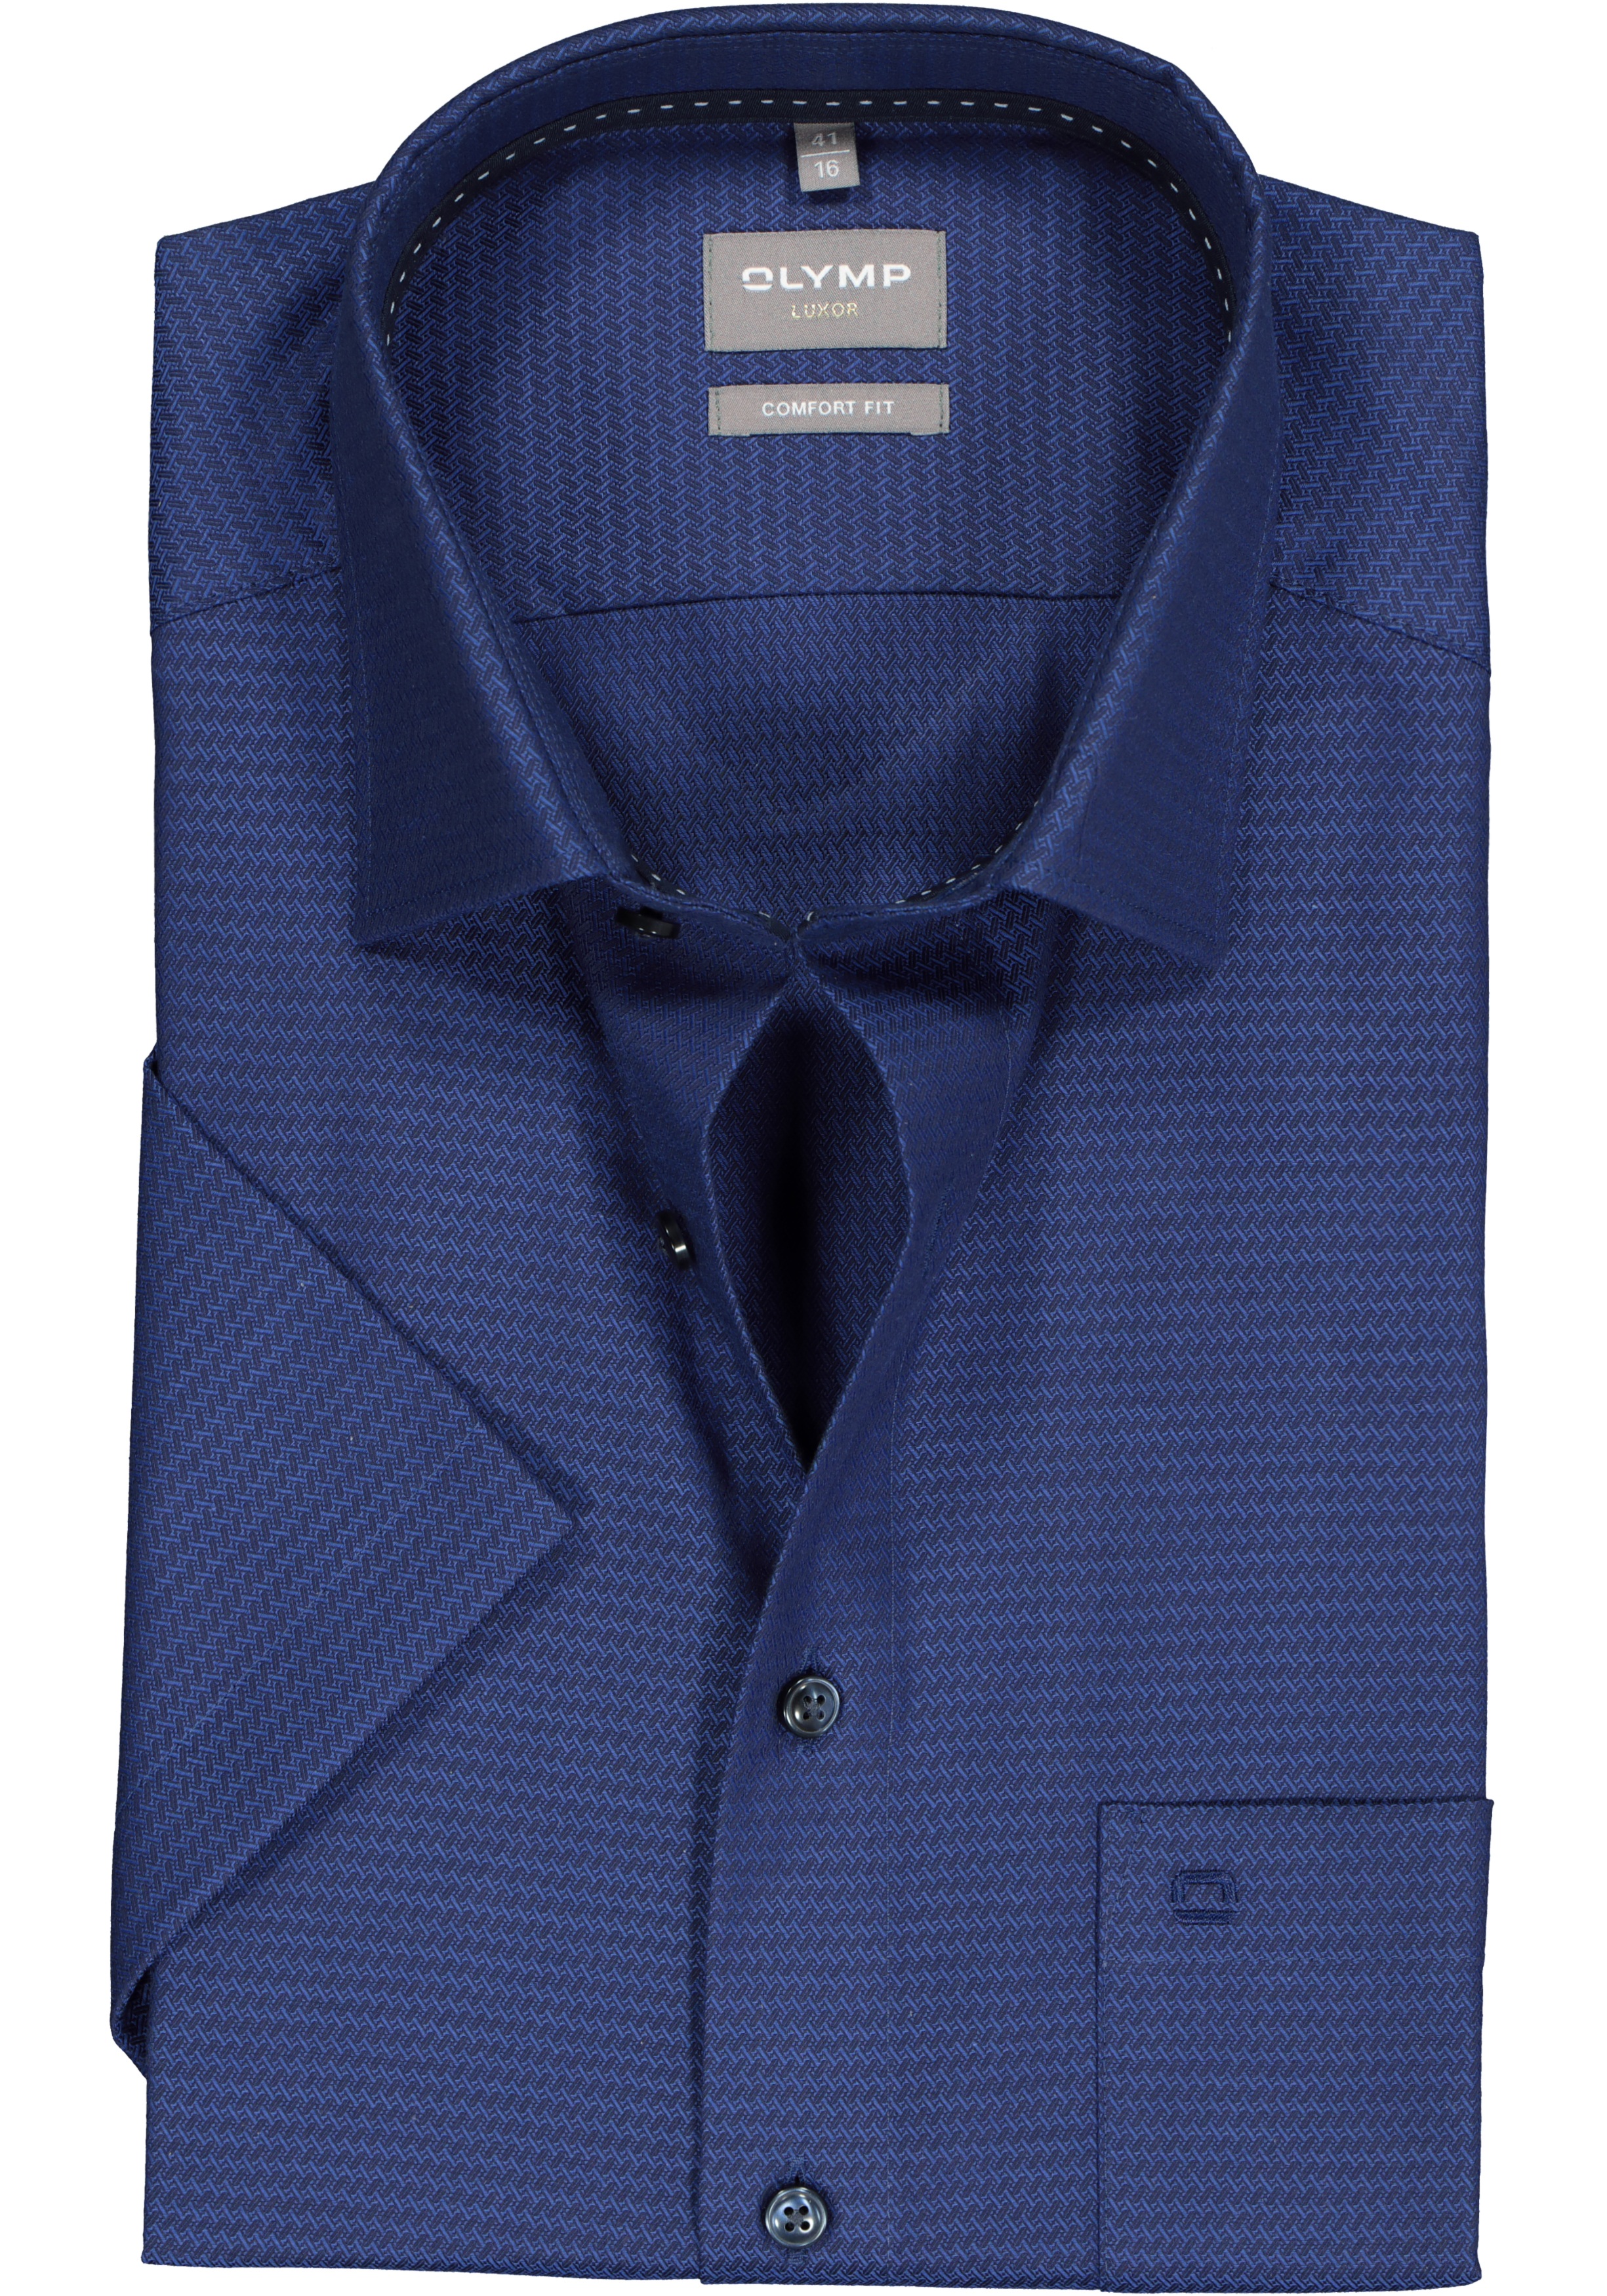 OLYMP comfort fit overhemd, korte mouw, structuur, marine blauw (contrast)